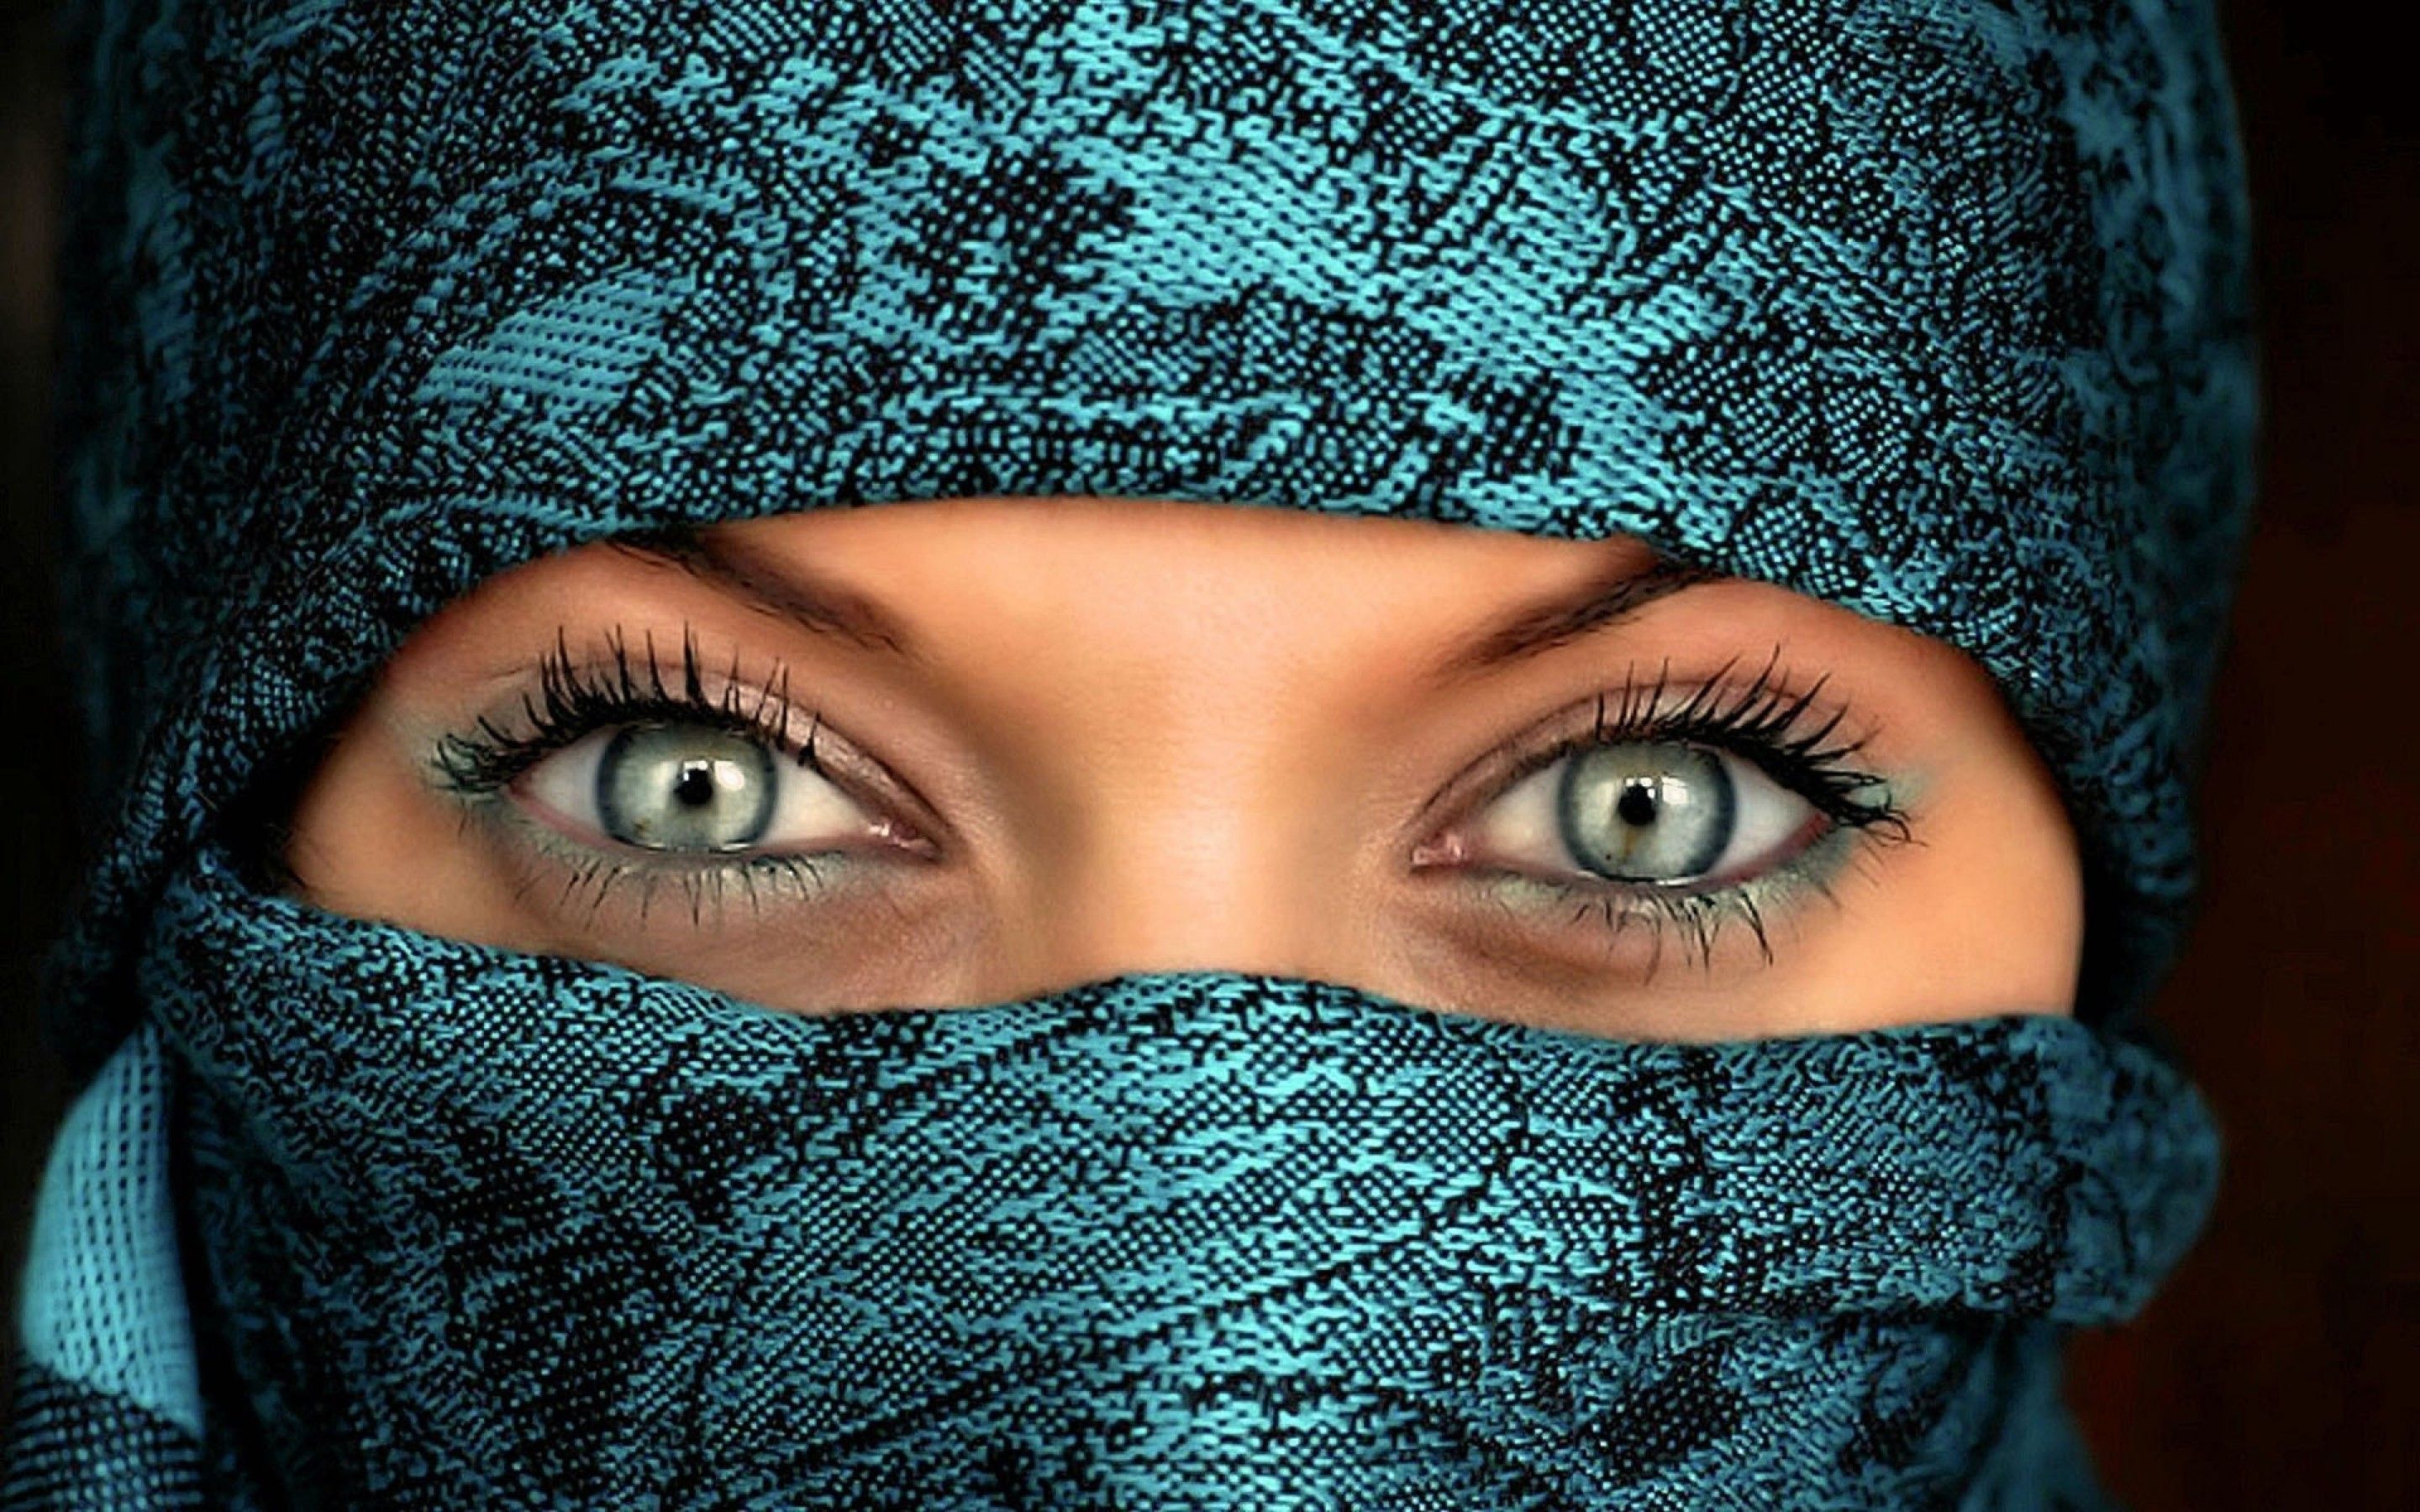 arabic girl wallpaper,face,eyebrow,blue,eye,nose